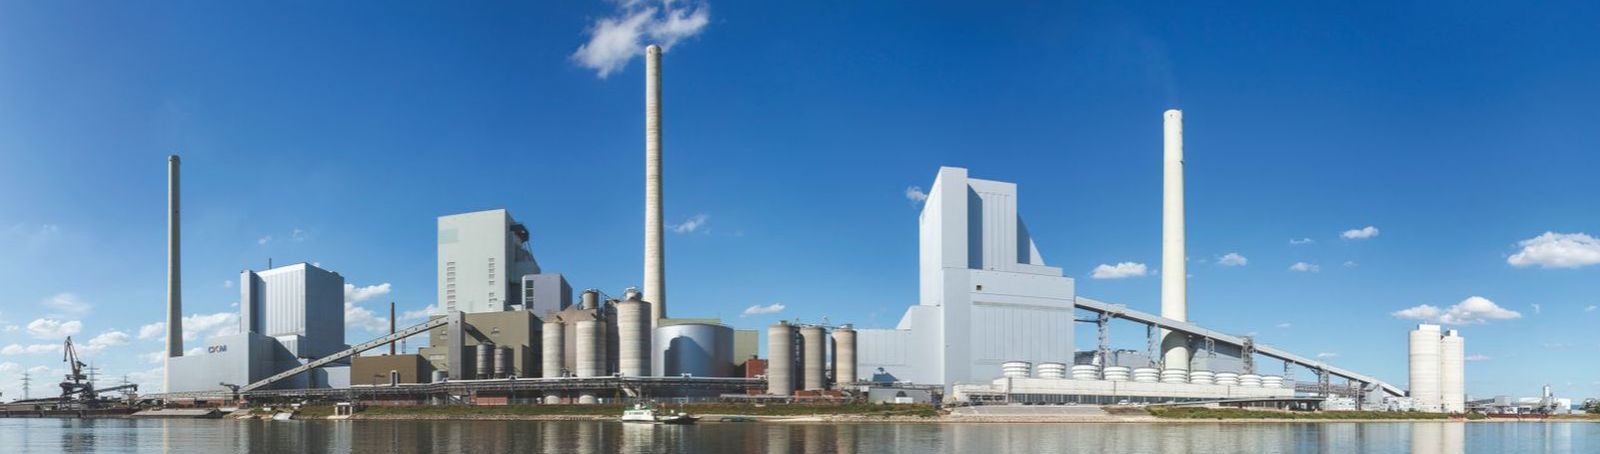 Das am Rhein gelegene Grosskraftwerk Mannheim (GKM) zeichnet sich durch sehr leistungsfähige Wasserentnahme- und Rücklaufeinrichtungen aus. Diese eignen sich optimal zur Einbindung einer Großwärmepumpe als Wärmequelle.